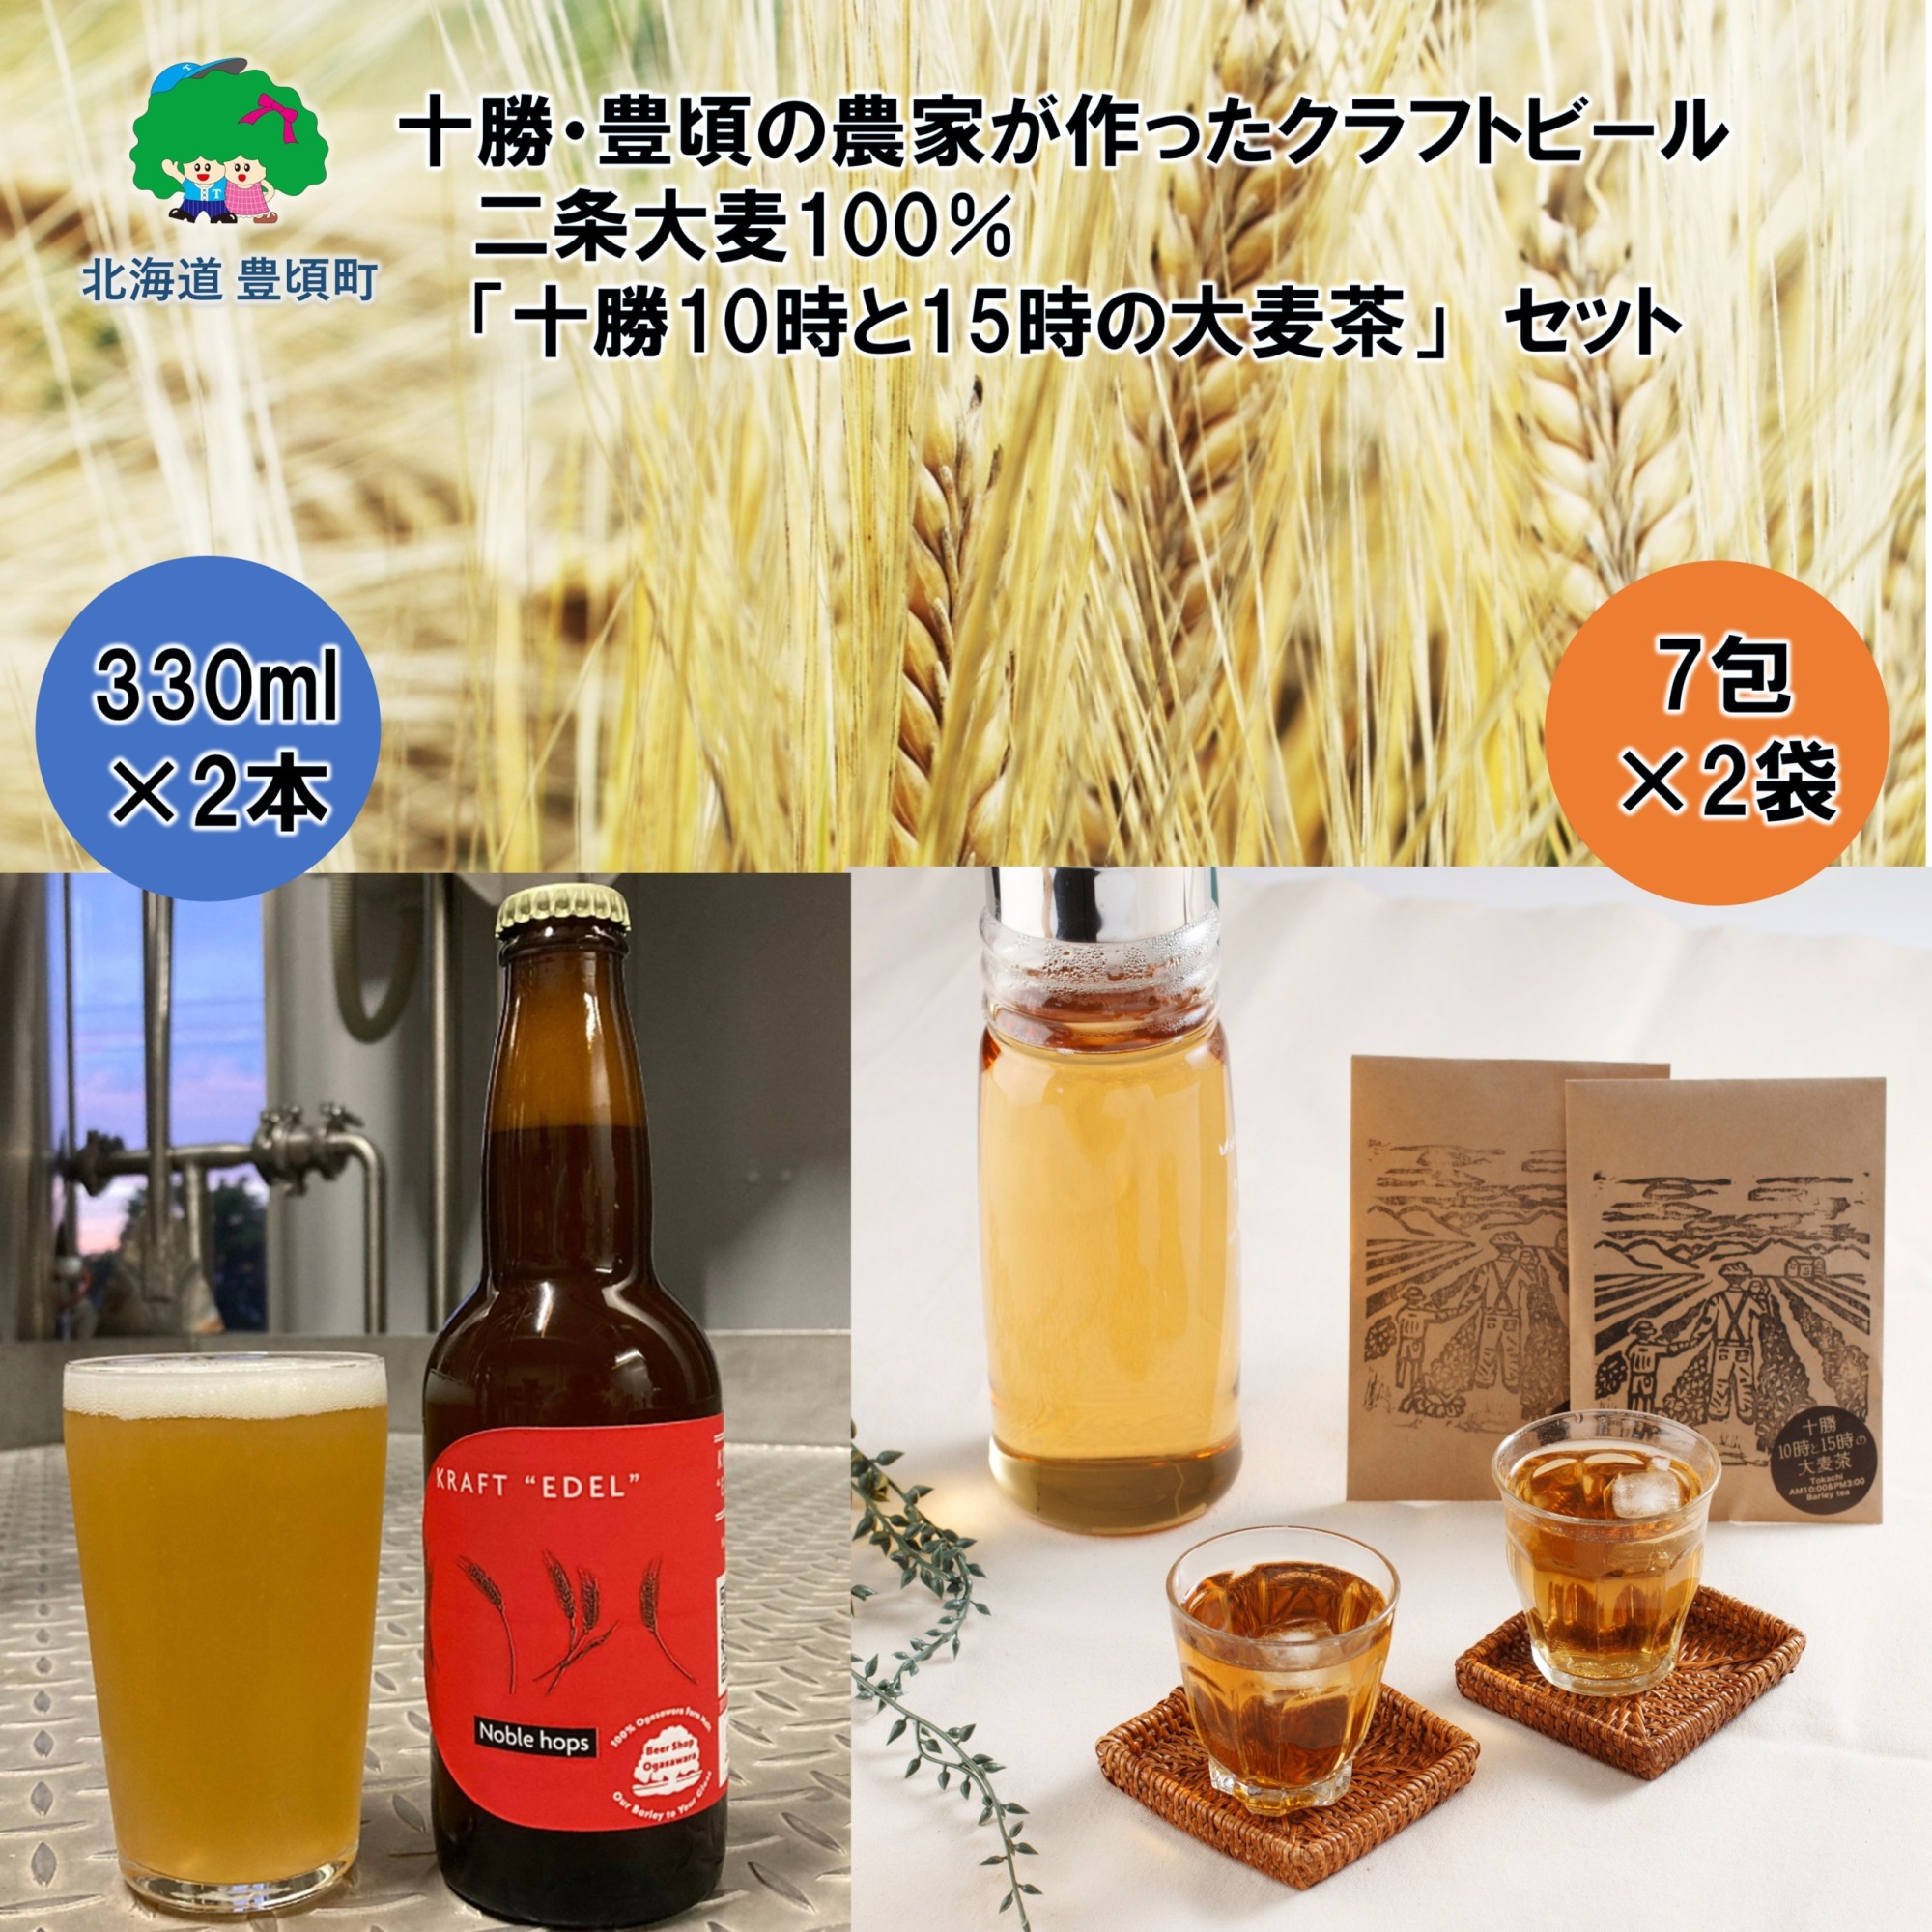 十勝・豊頃の農家が作ったクラフトビール330ml×2本・二条大麦100％「十勝10時と15時の大麦茶」7包×2袋セット